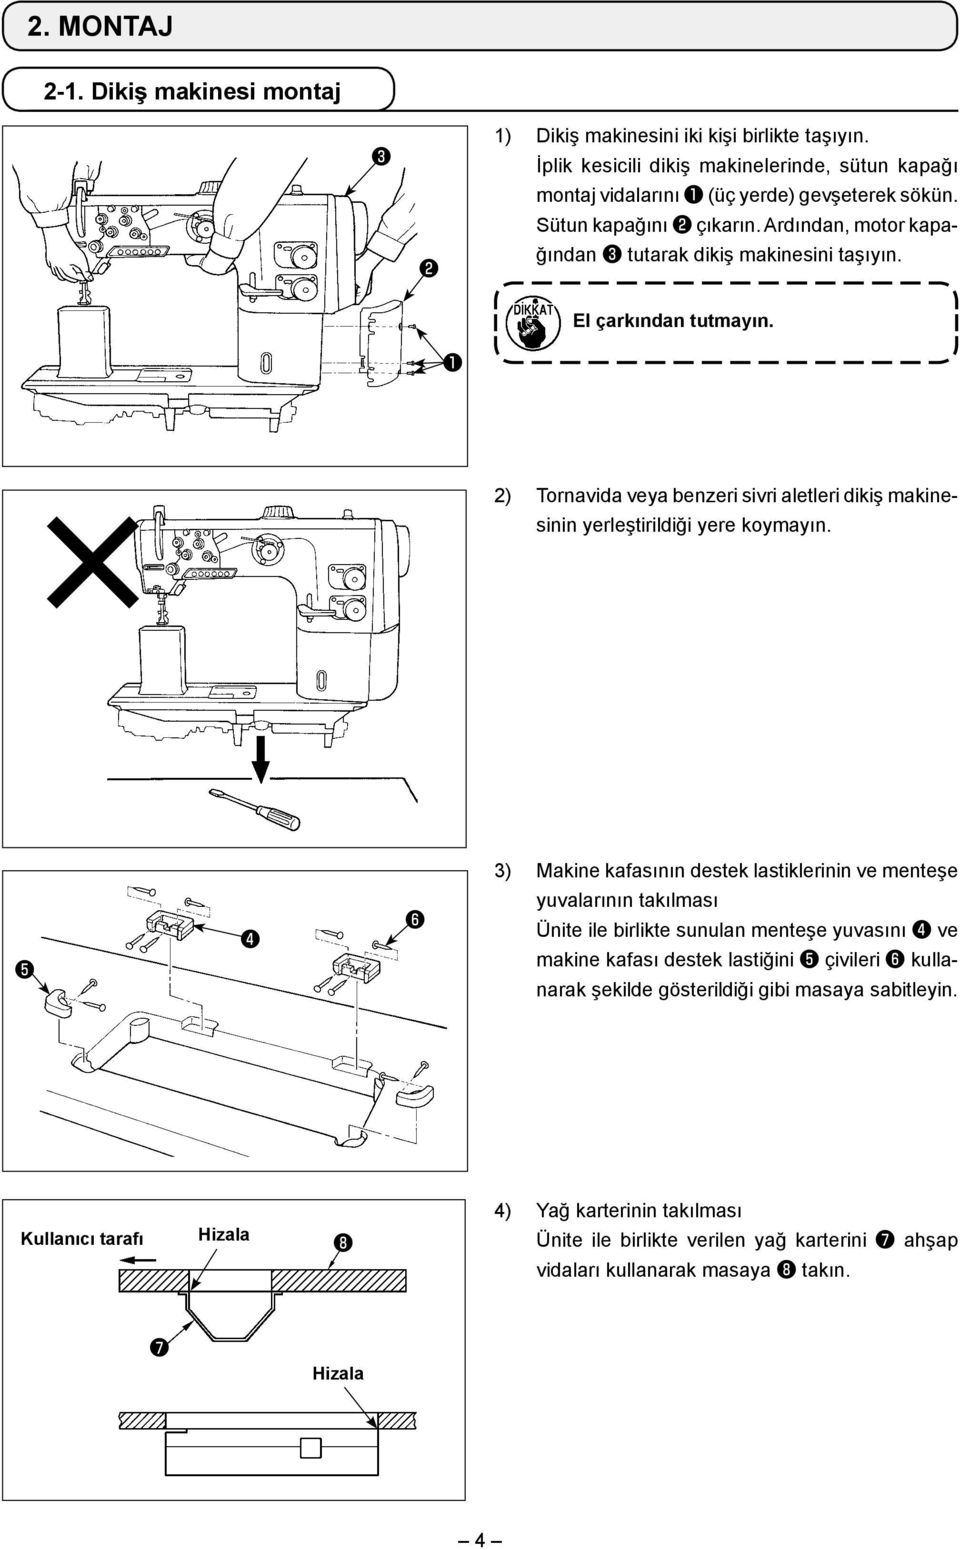 2) Tornavida veya benzeri sivri aletleri dikiş makinesinin yerleştirildiği yere koymayın.